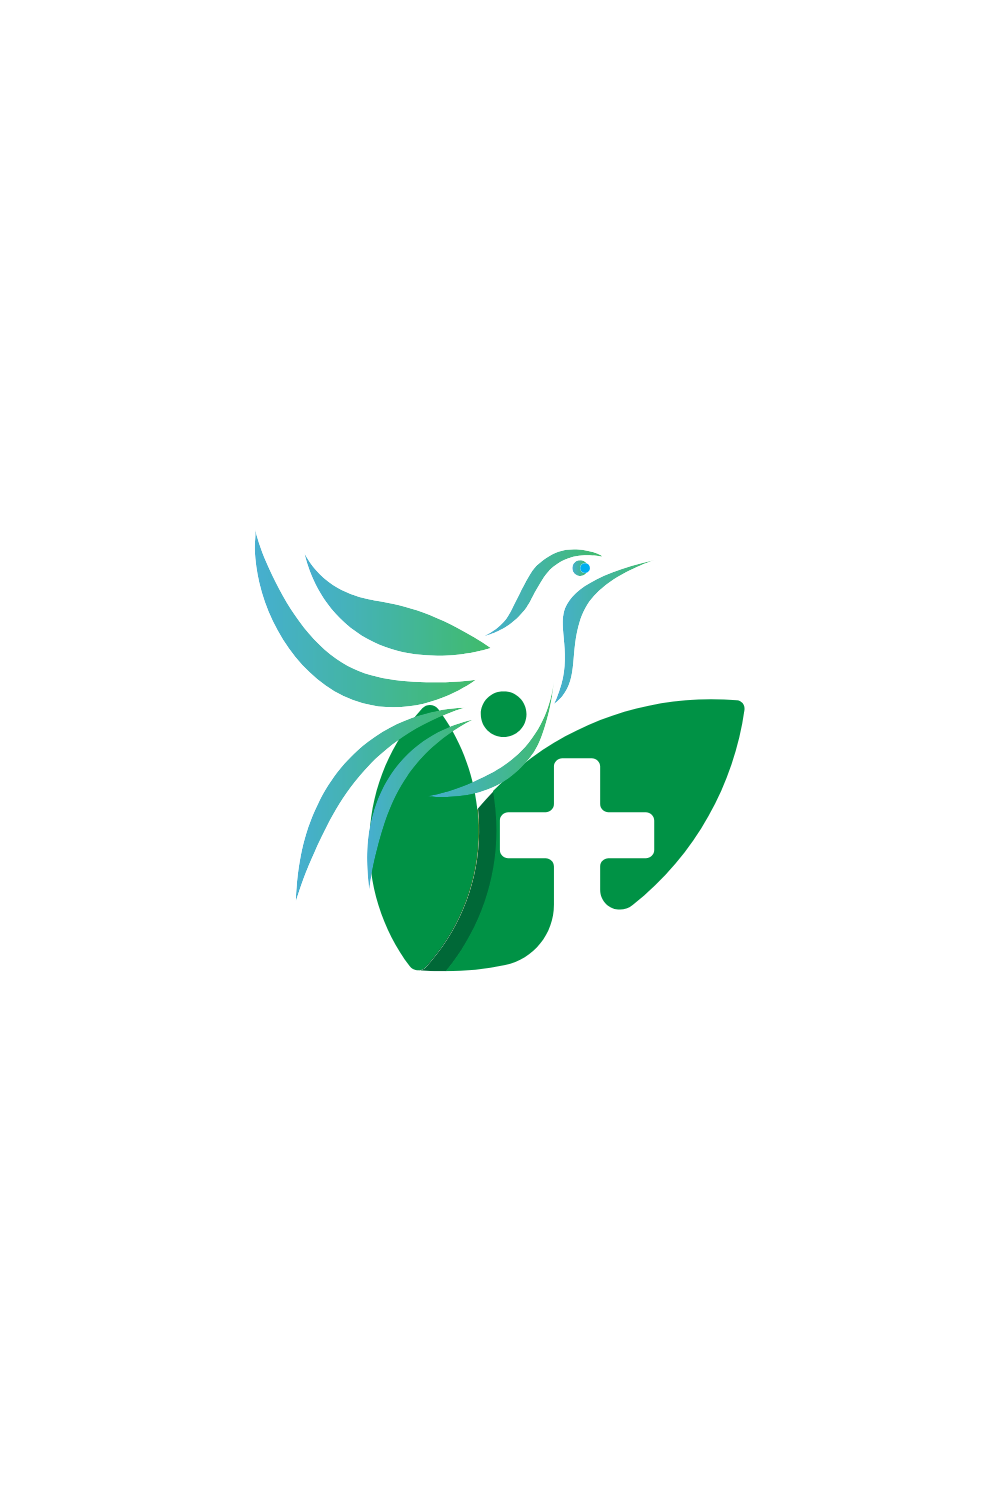 green company name financial services logo 10 579